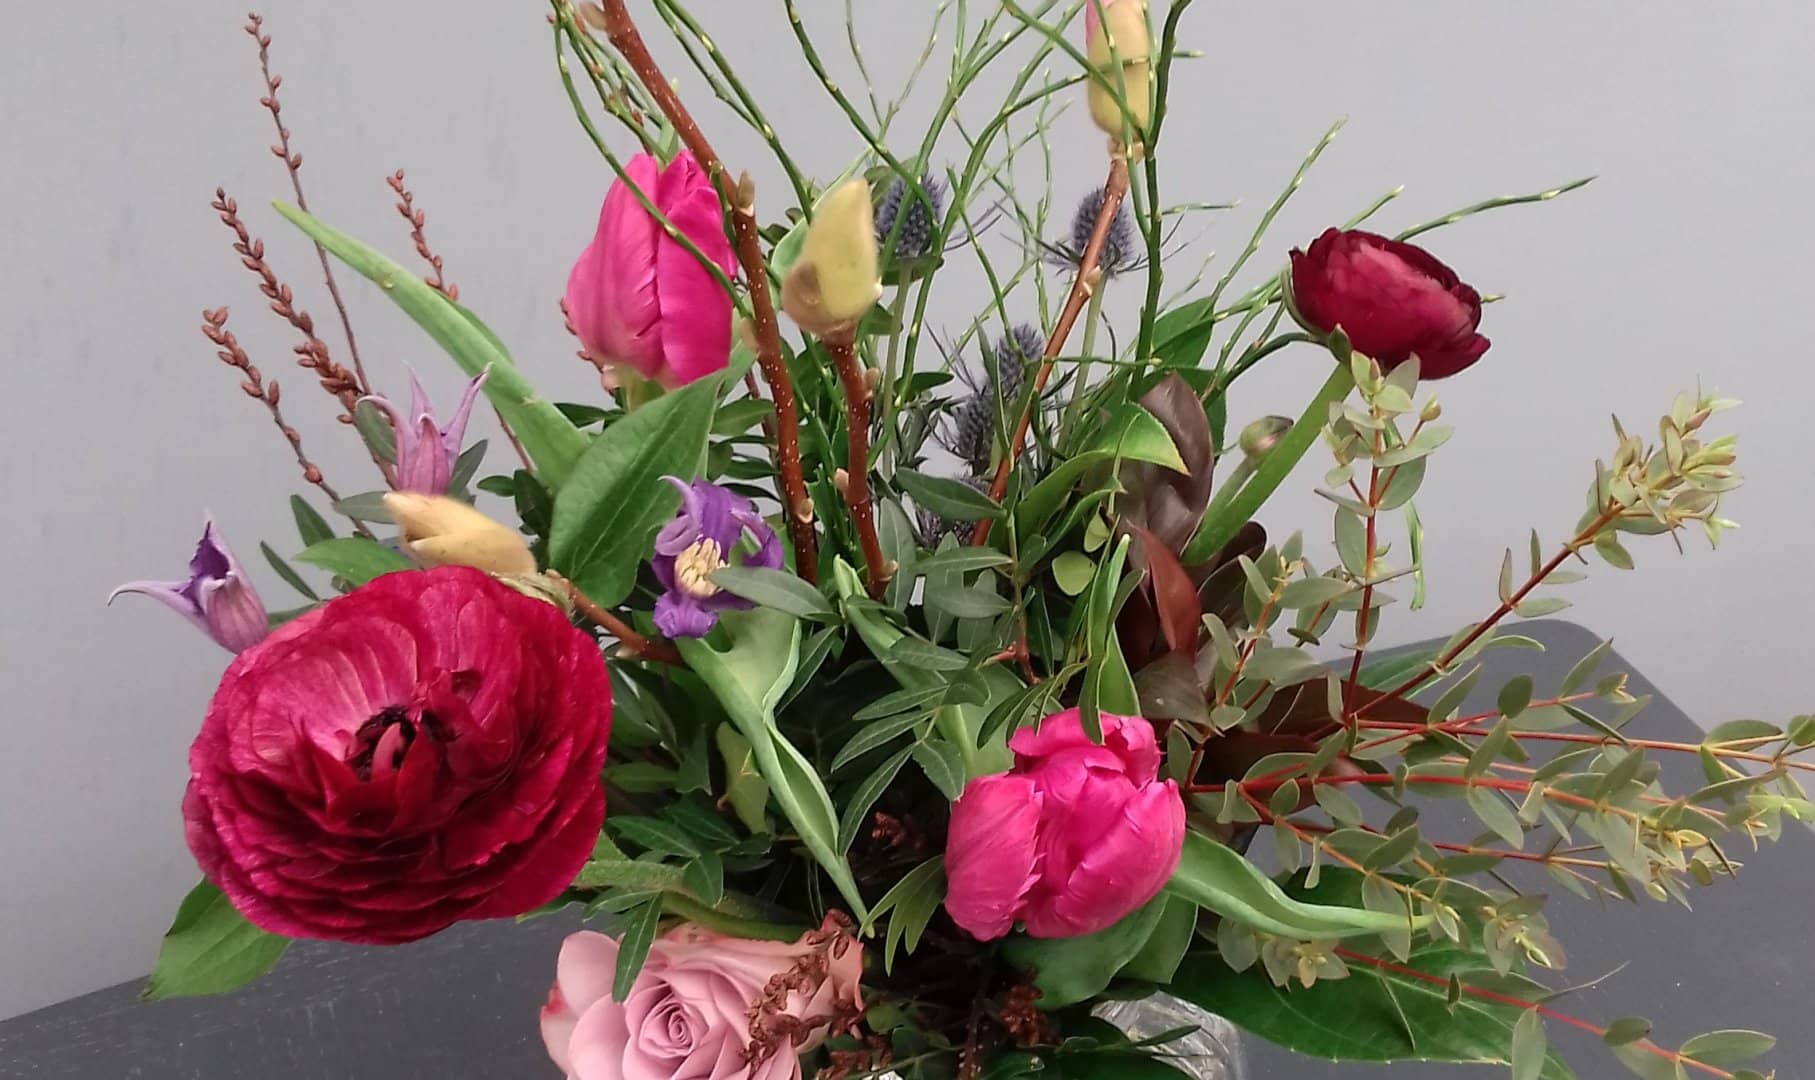 bloemstuk met rode en roze tulpen gemaakt tijdens een workshop bloemschikken bij Het Natuur Atelier in het Westland